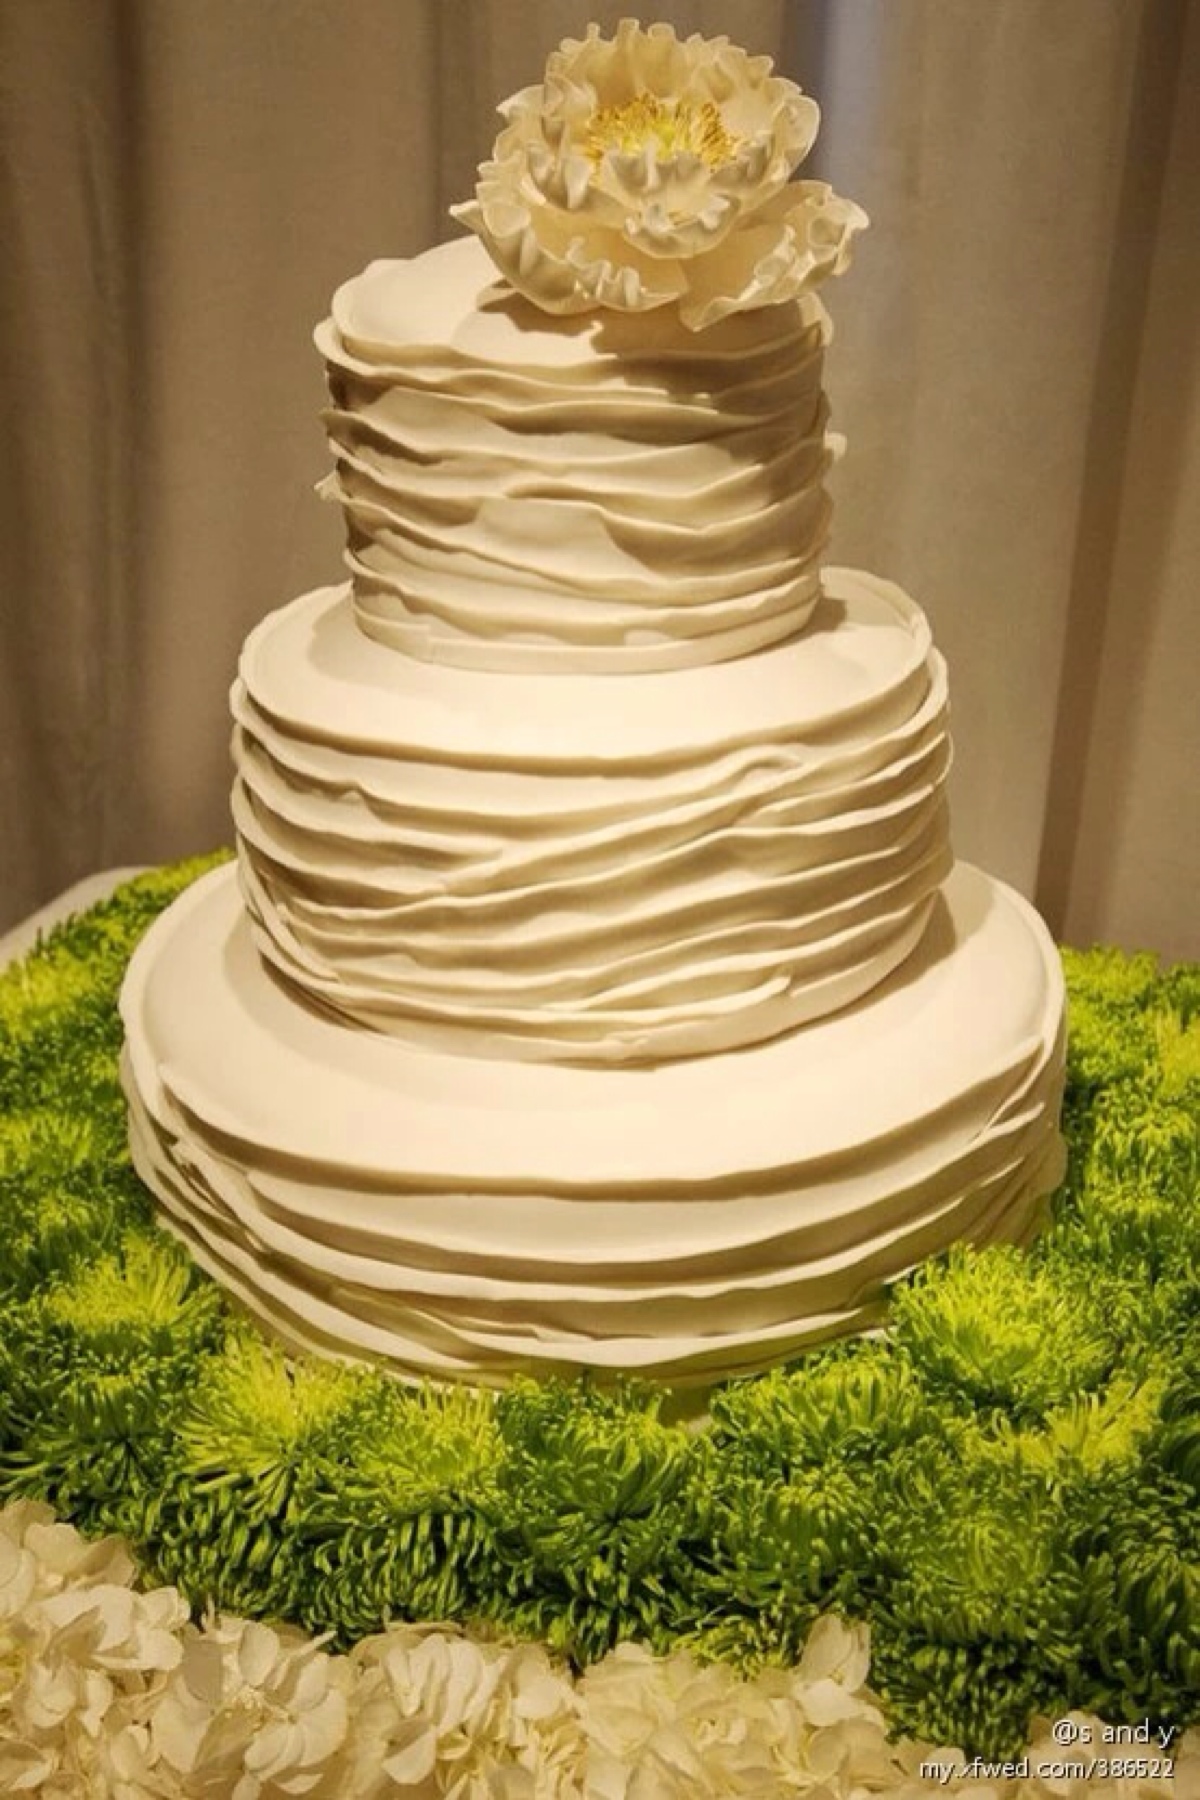 翻糖 婚礼 鲜花 纯白色 蛋糕 甜点